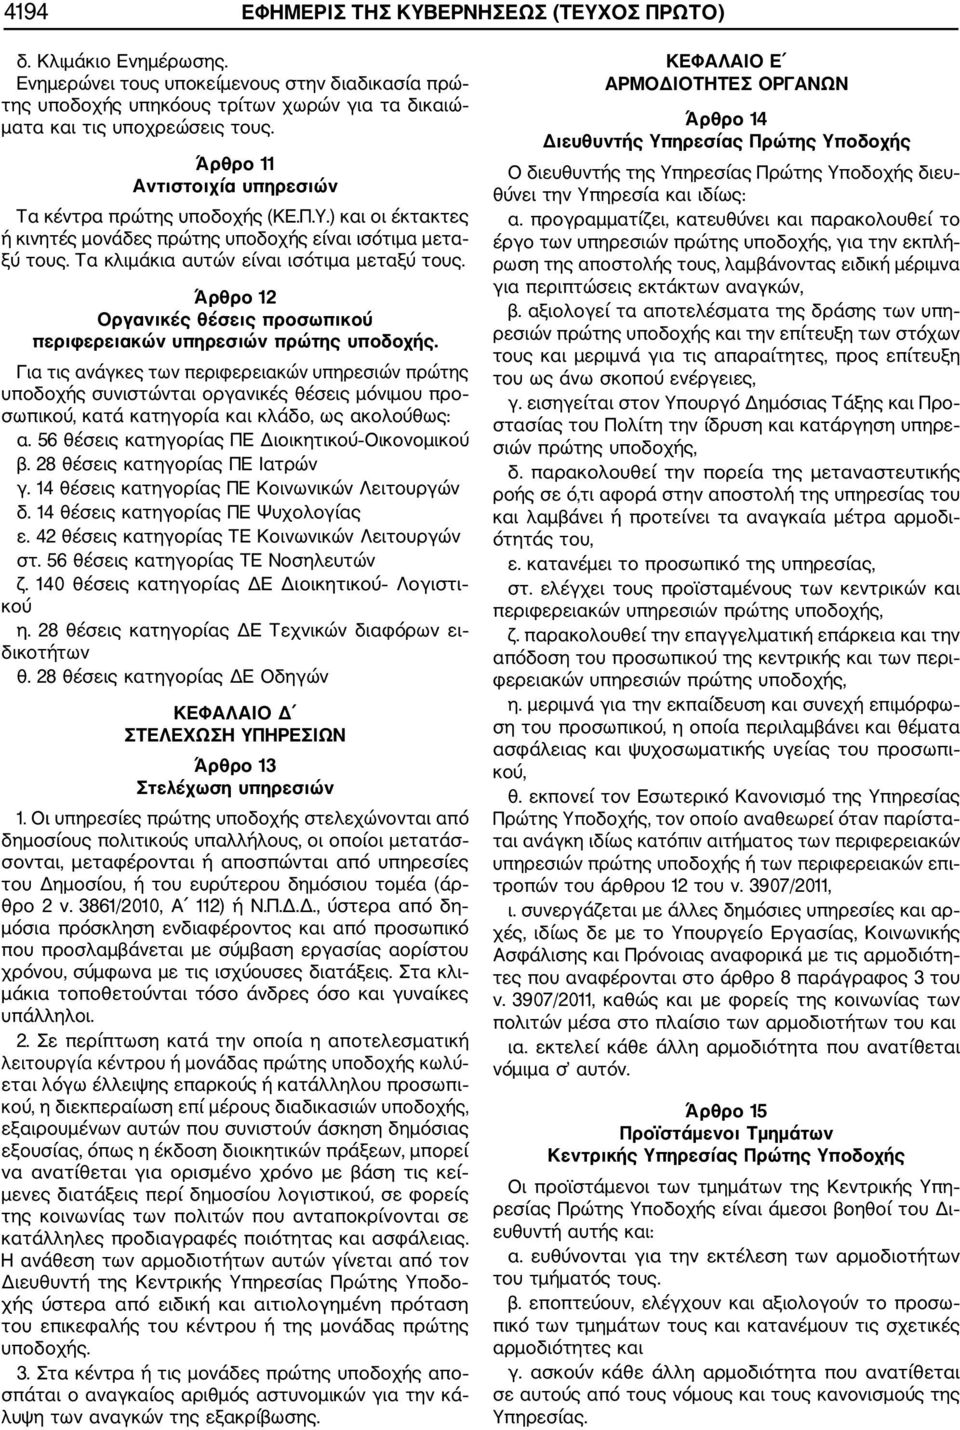 Άρθρο 12 Οργανικές θέσεις προσωπικού περιφερειακών υπηρεσιών πρώτης υποδοχής.